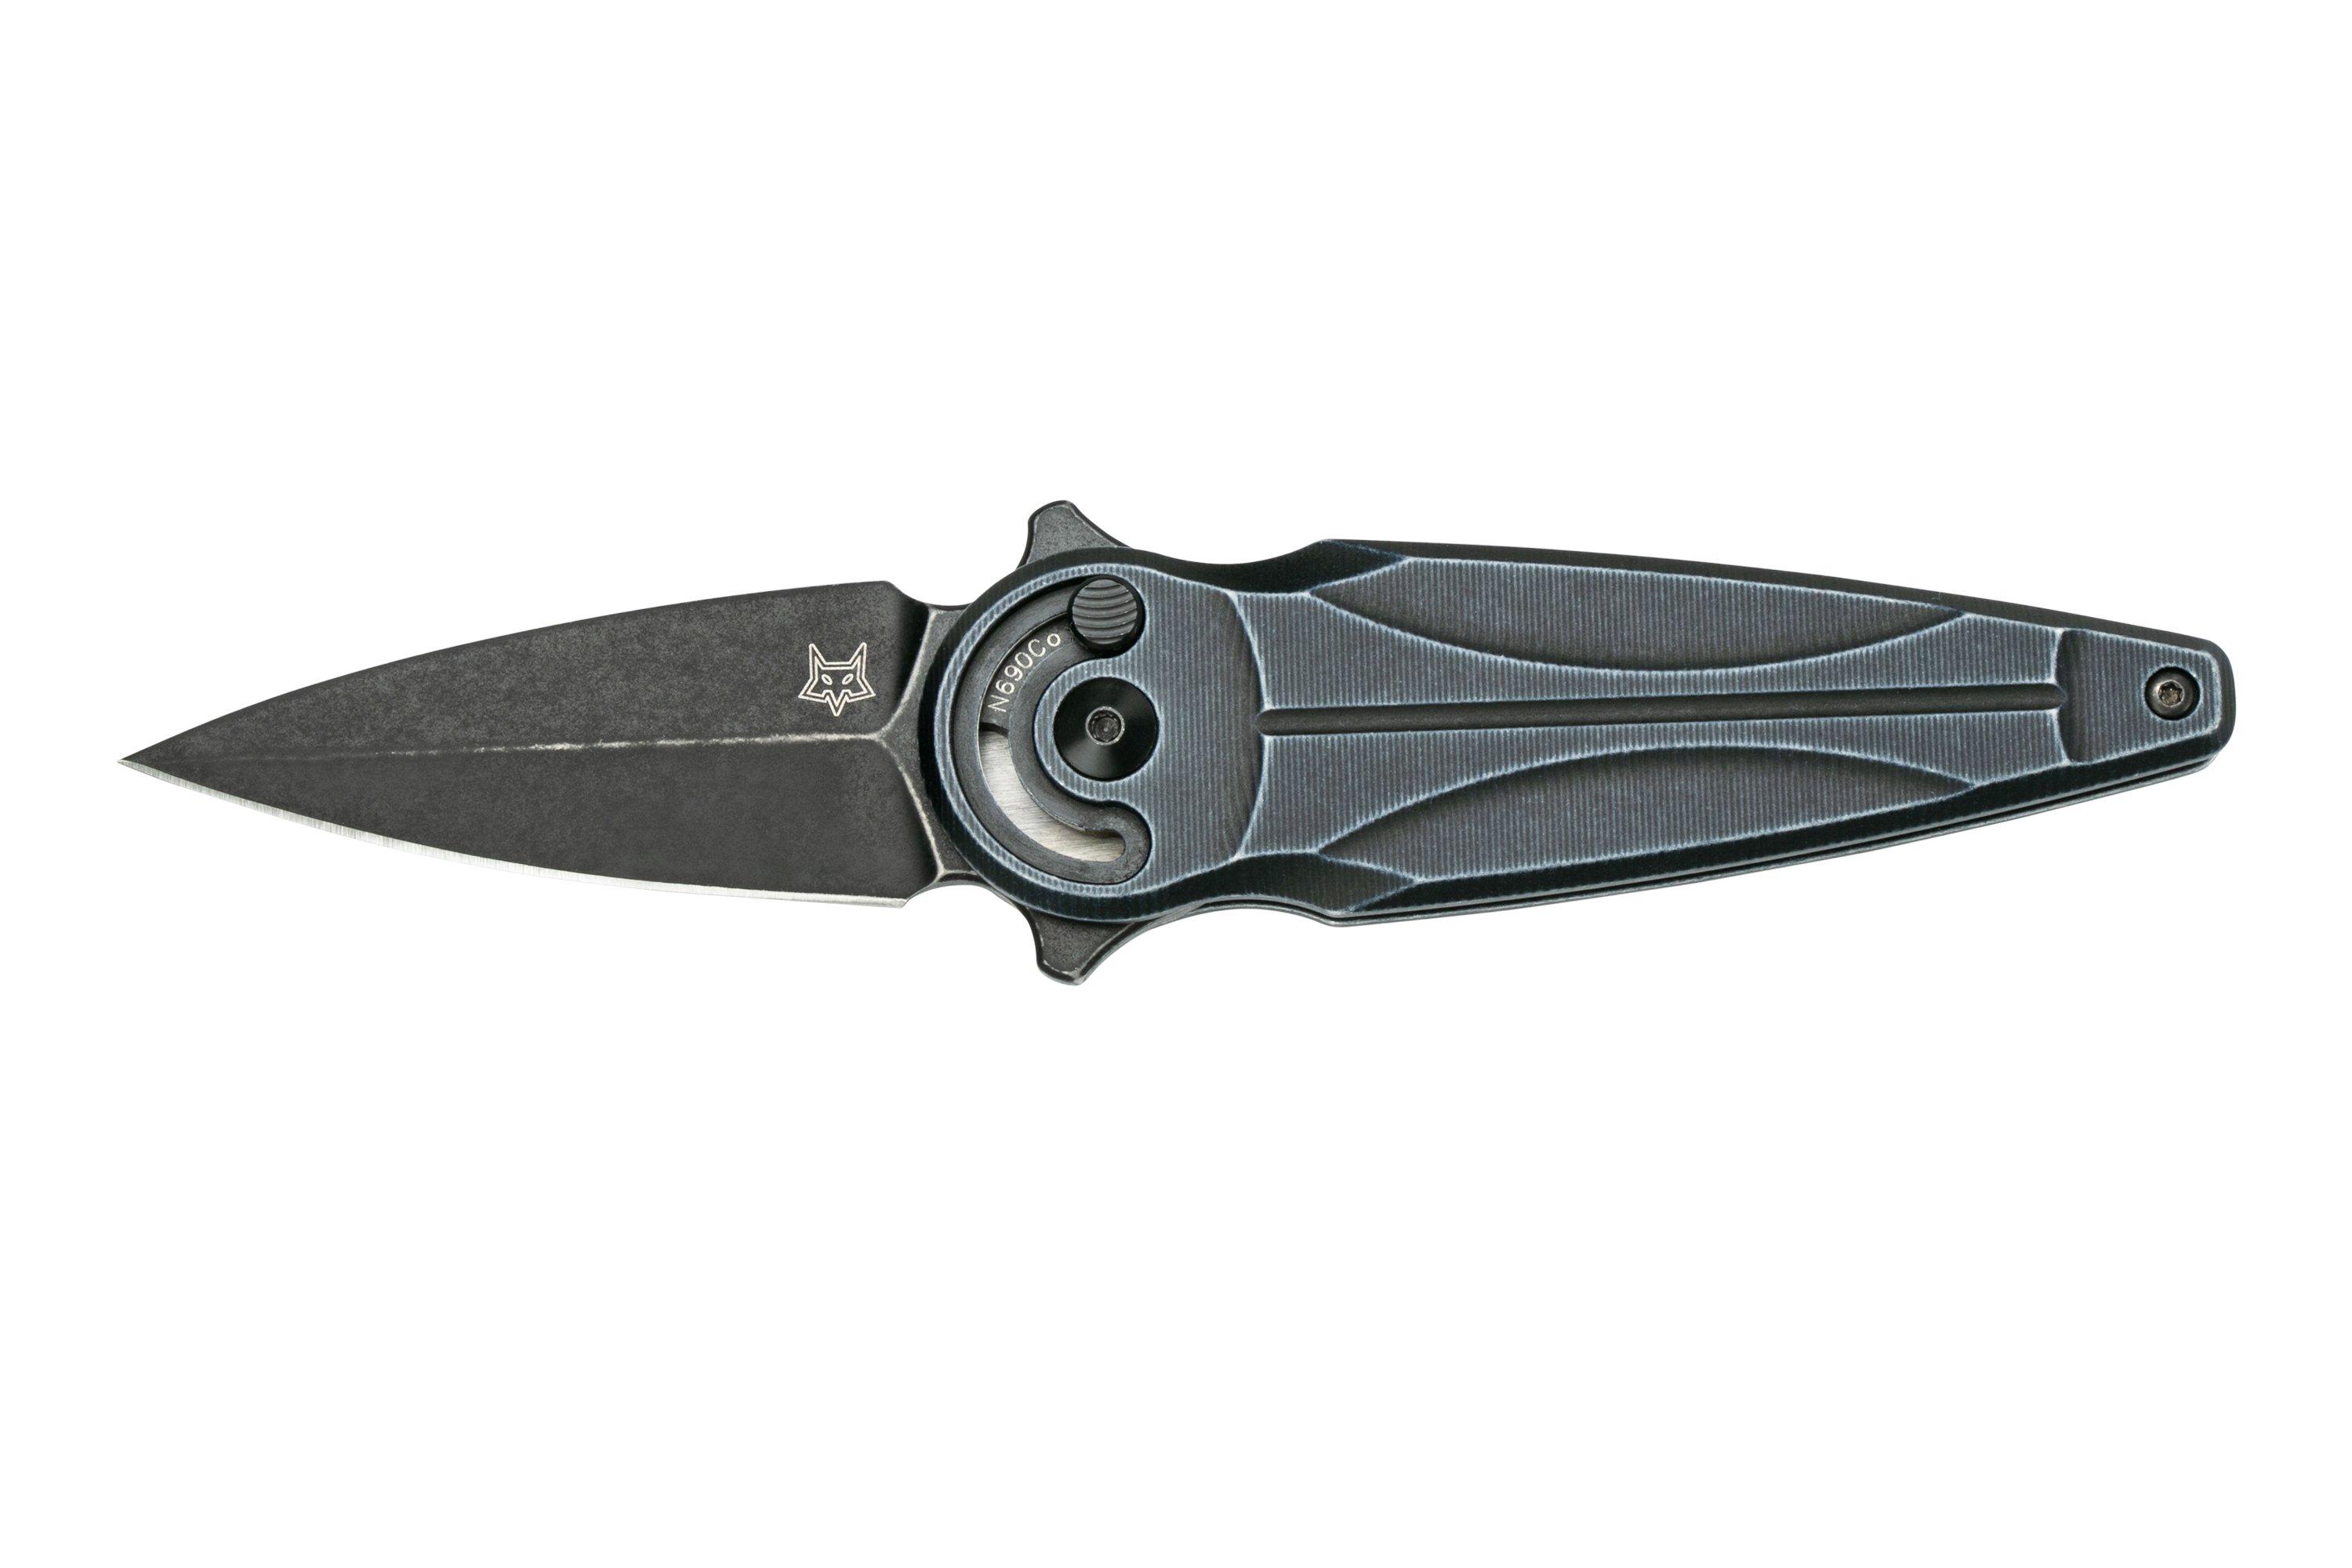  Fox Knives Saturn FX-551ALG Pocket Knife Gray Aluminum